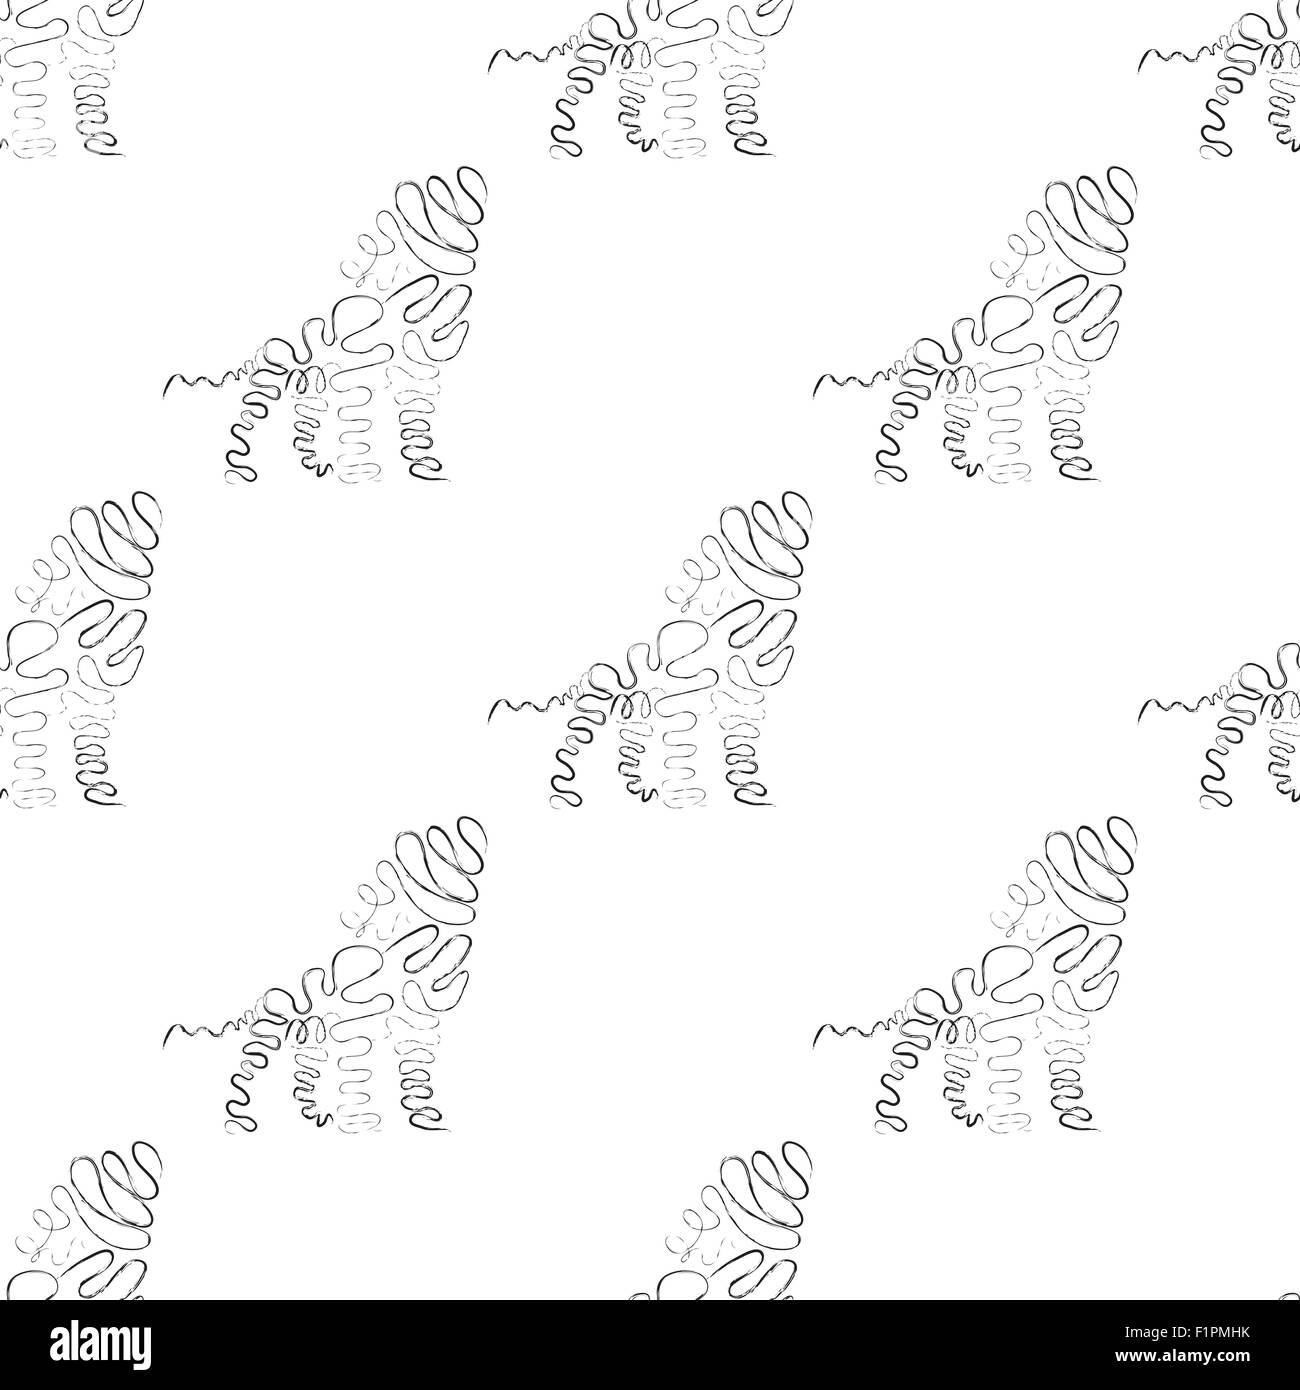 Lion Musterdesign in schwarze und weiße Farbe Vektor-Illustration Stock Vektor